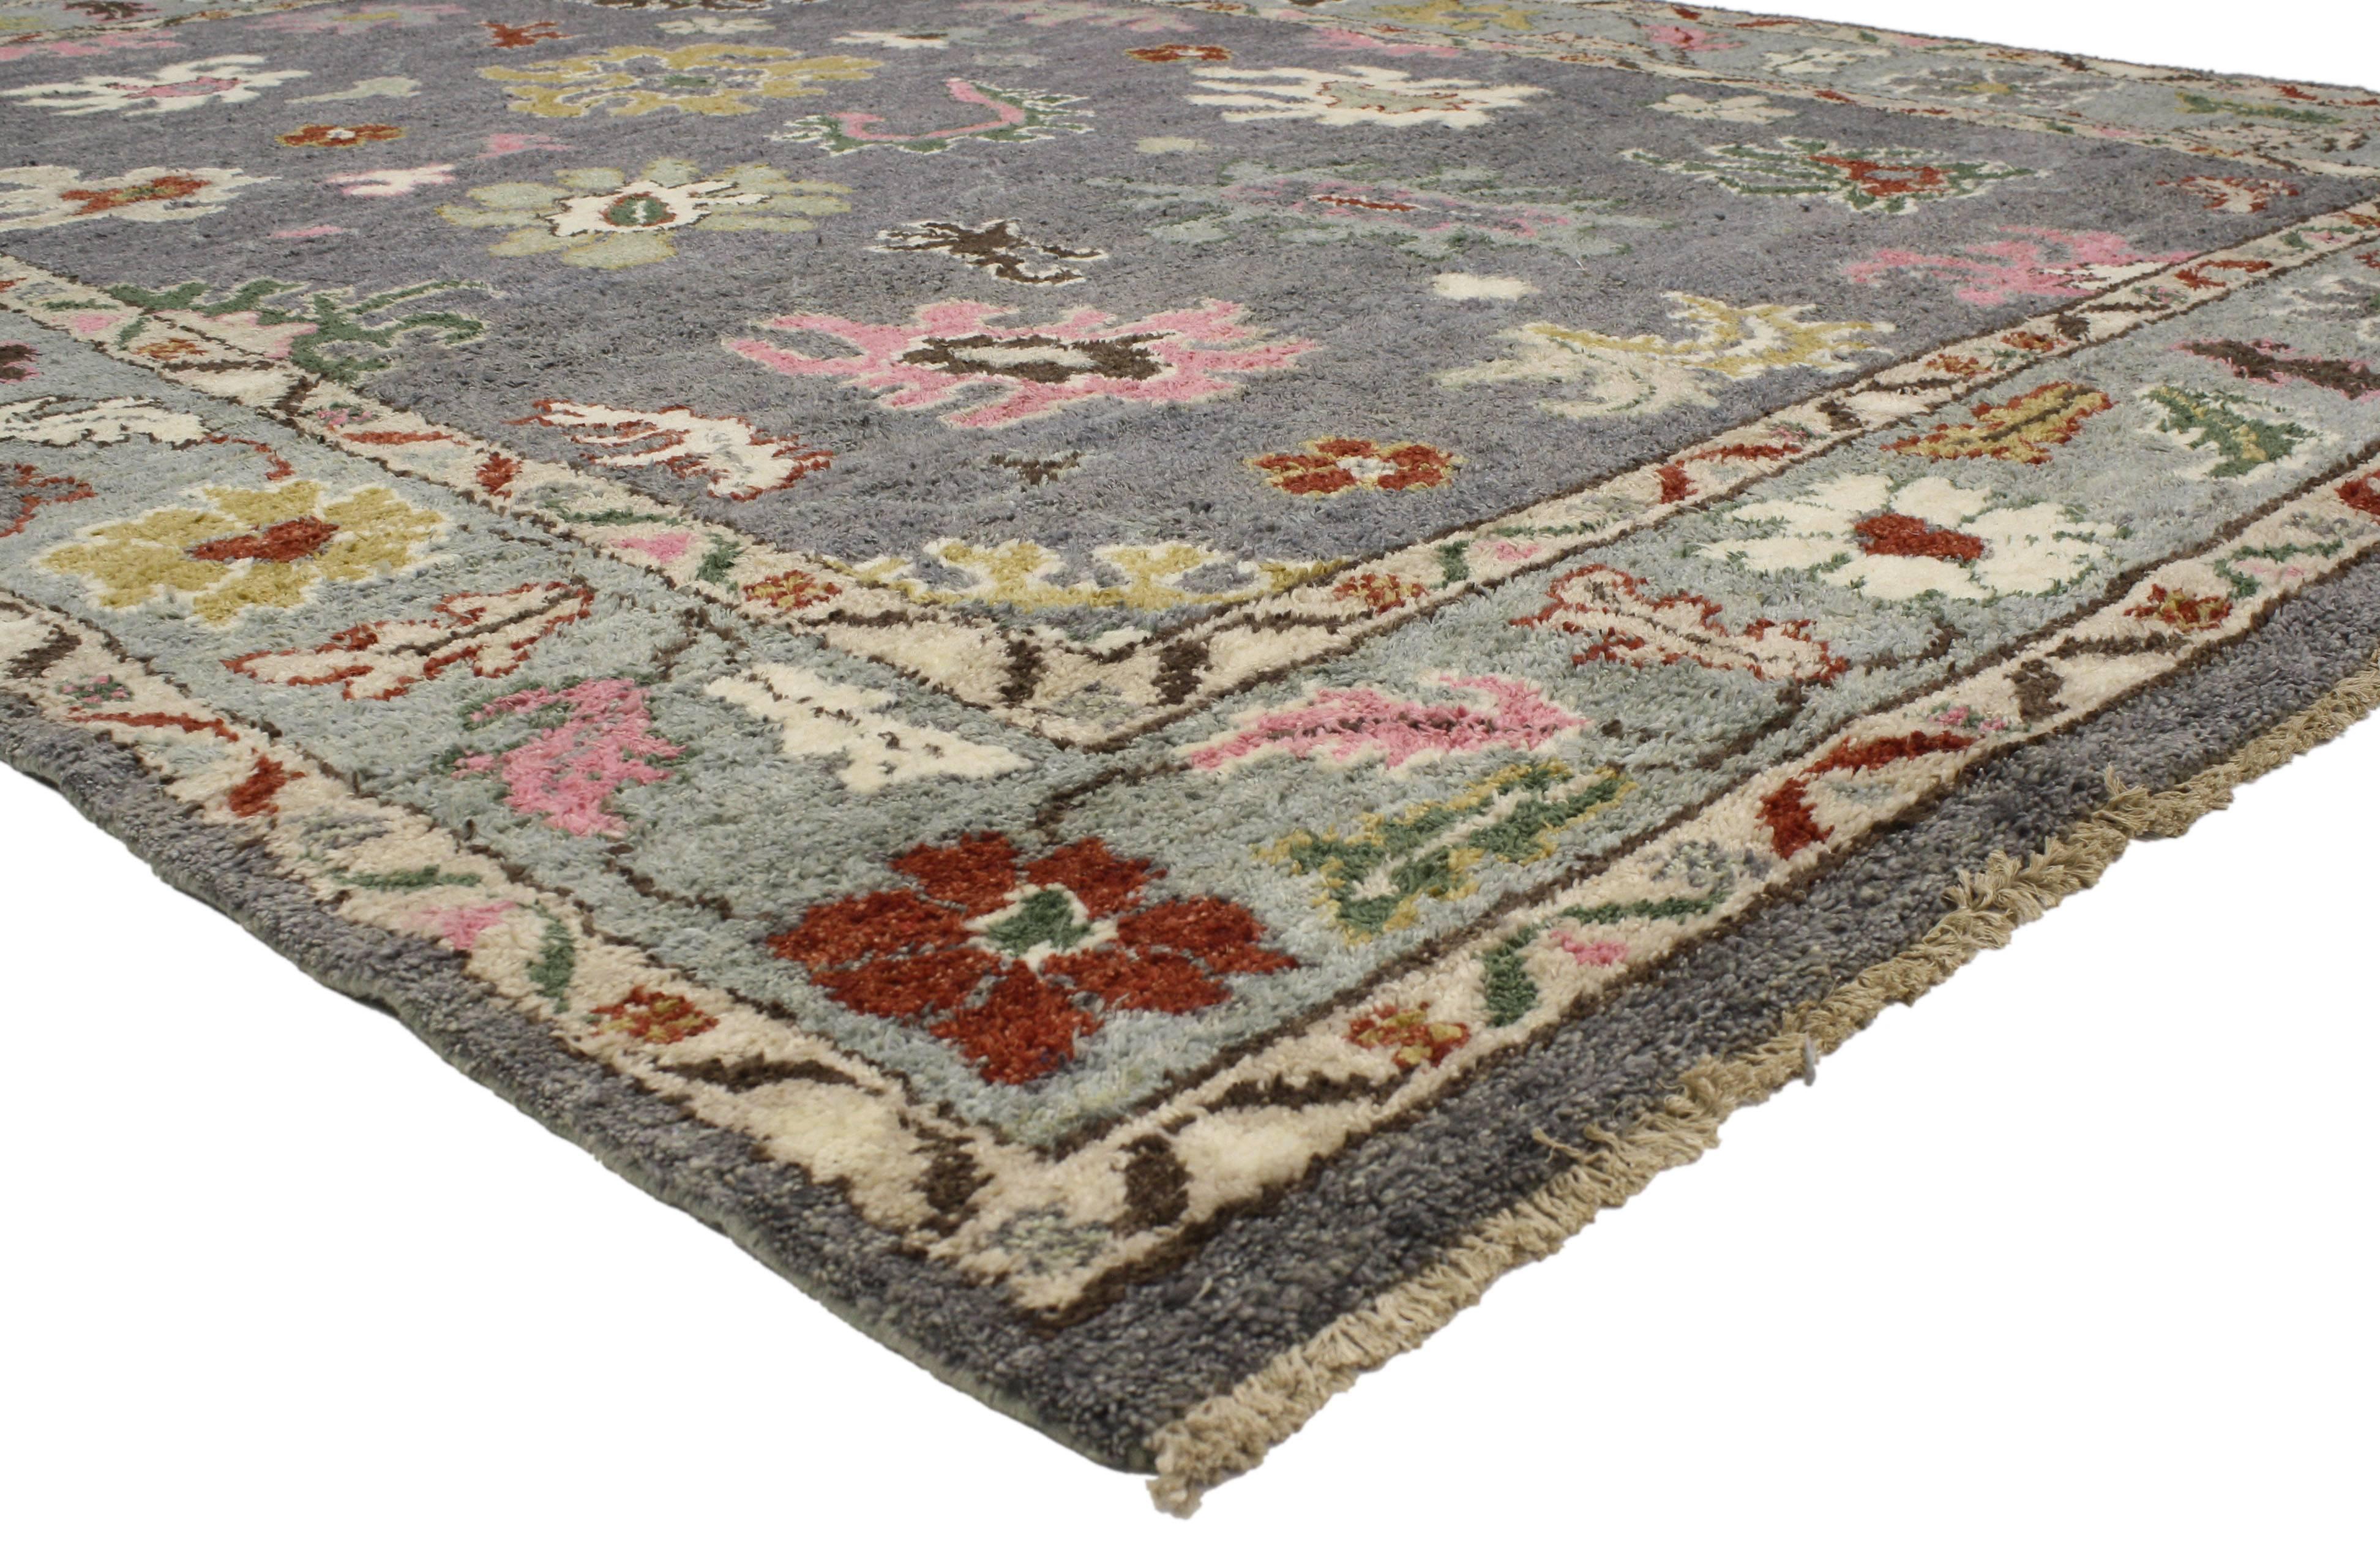 memphis design rug